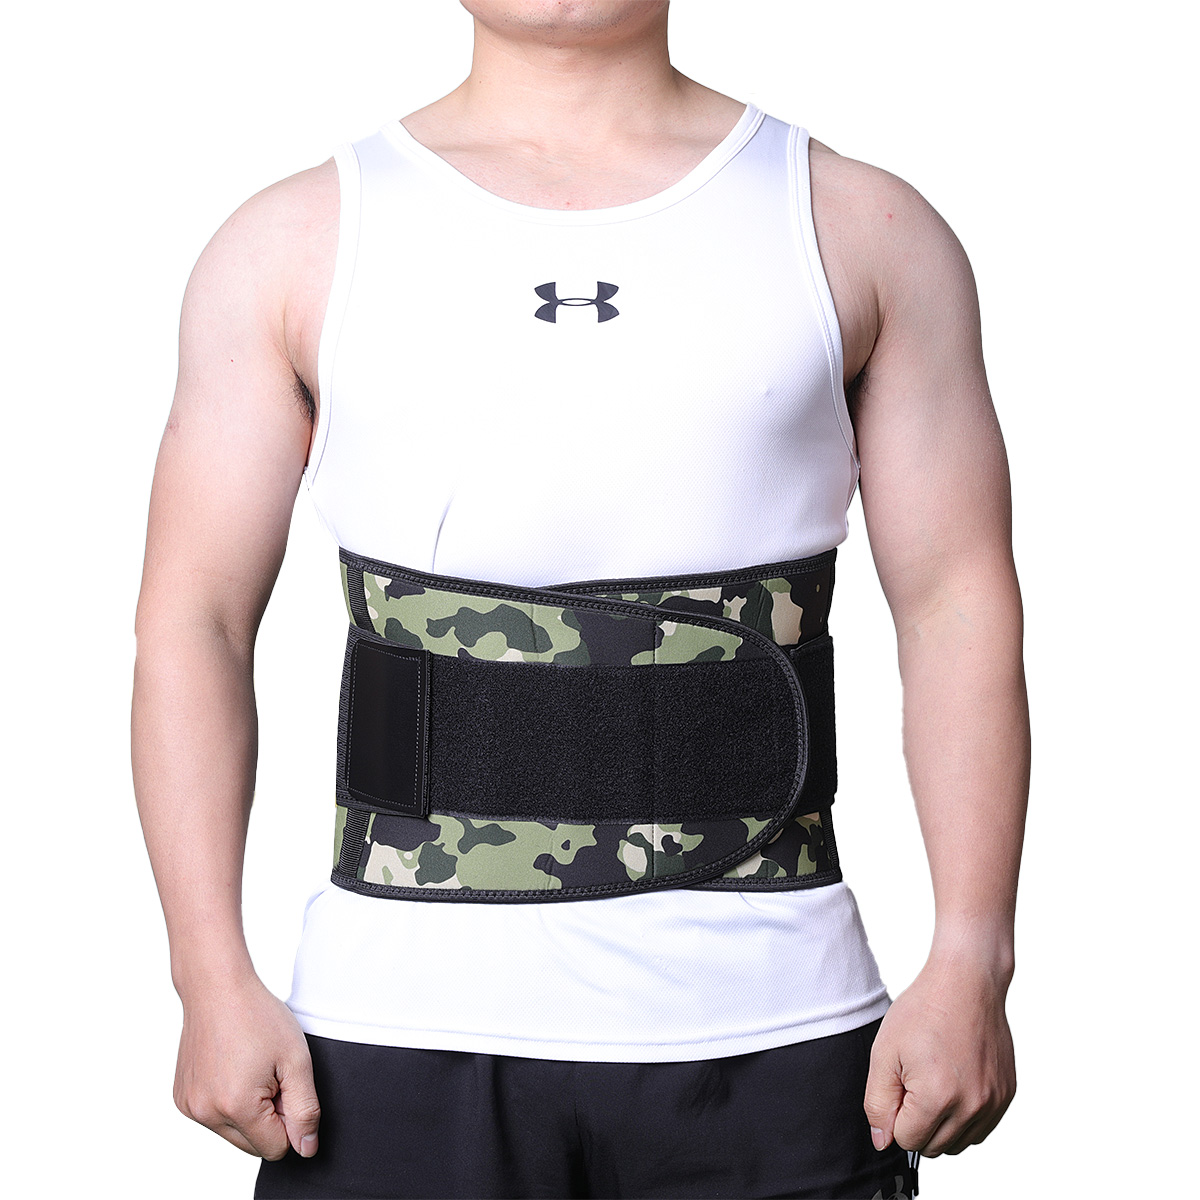 Men Customized Fitness Waist Support Belt